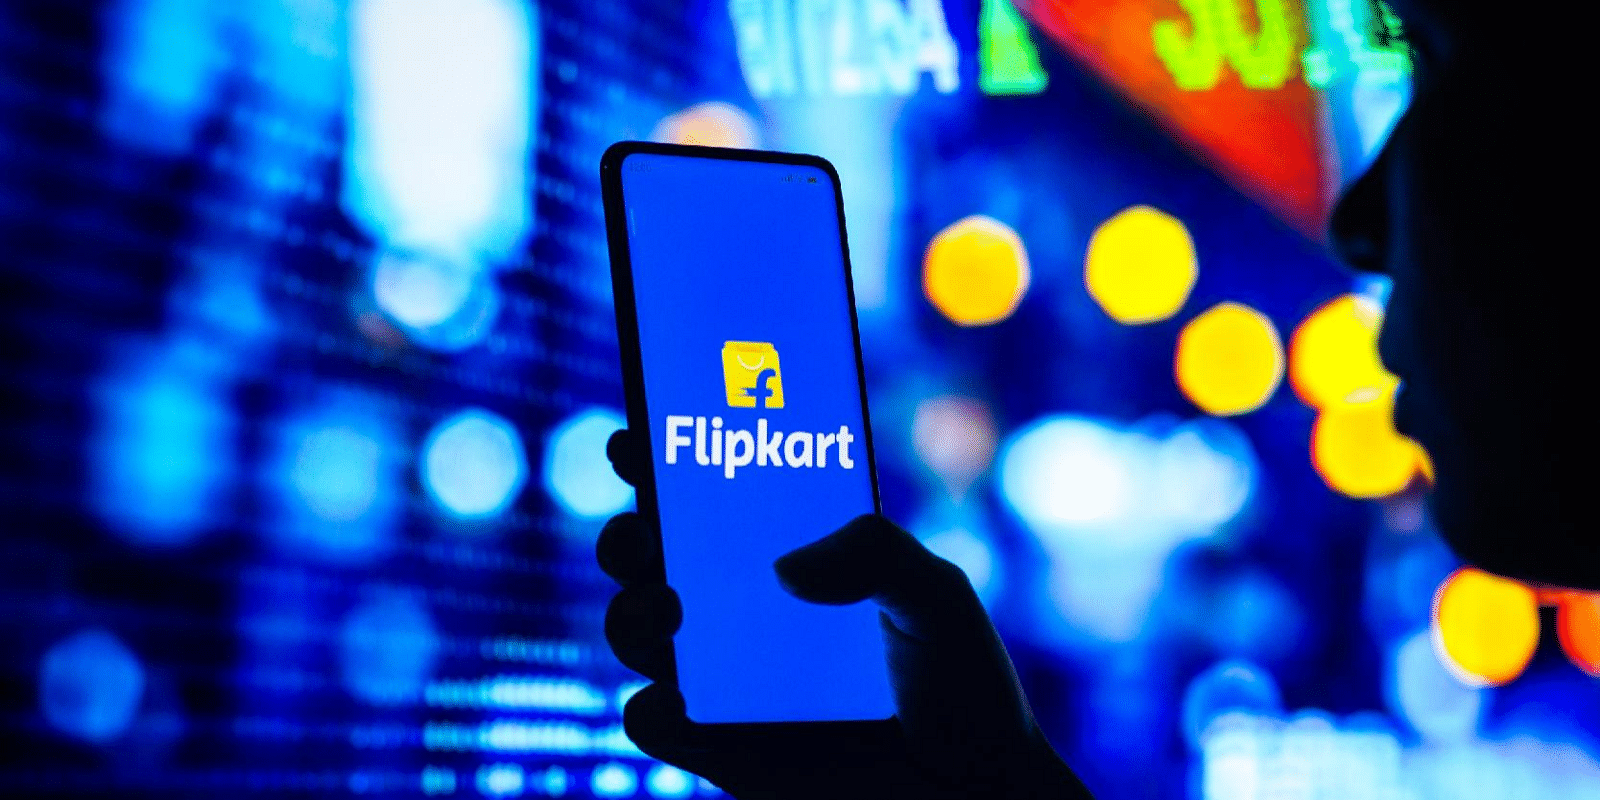 Walmart pumps in additional $600M in Flipkart: Report